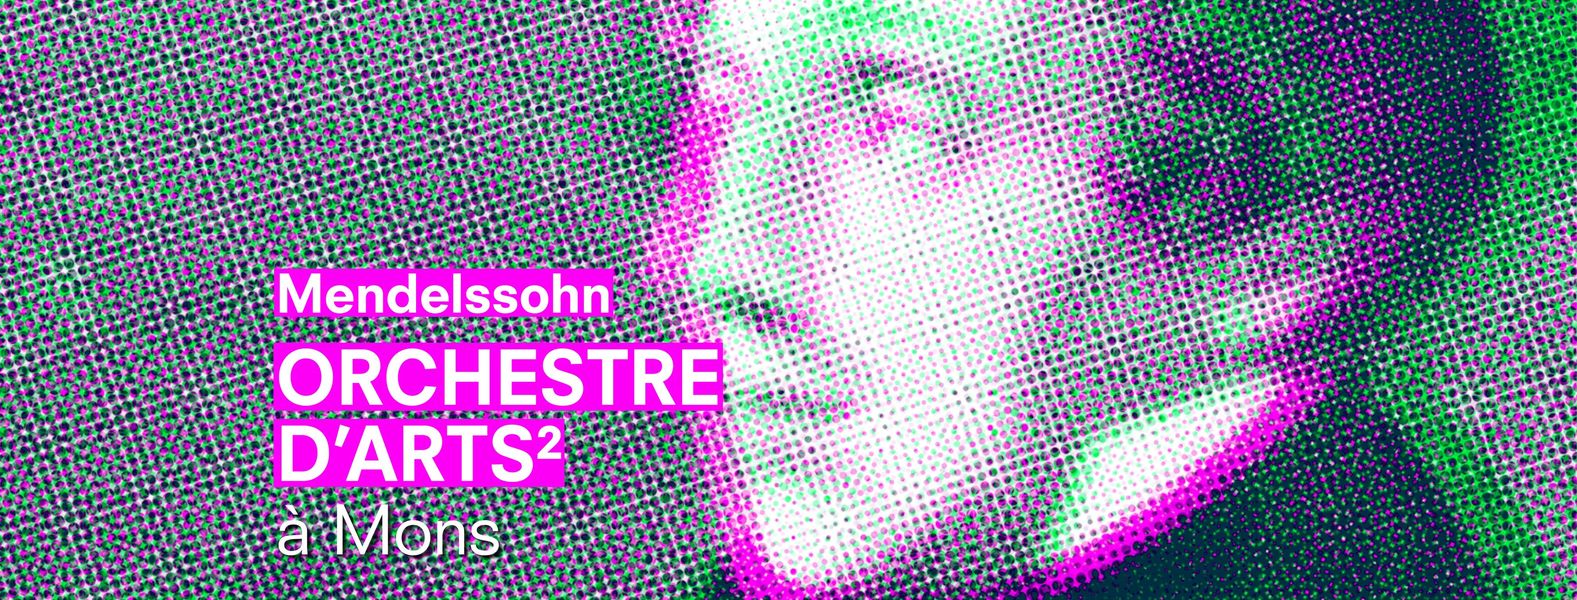 ORCHESTRE D'ARTS² / Mendelssohn